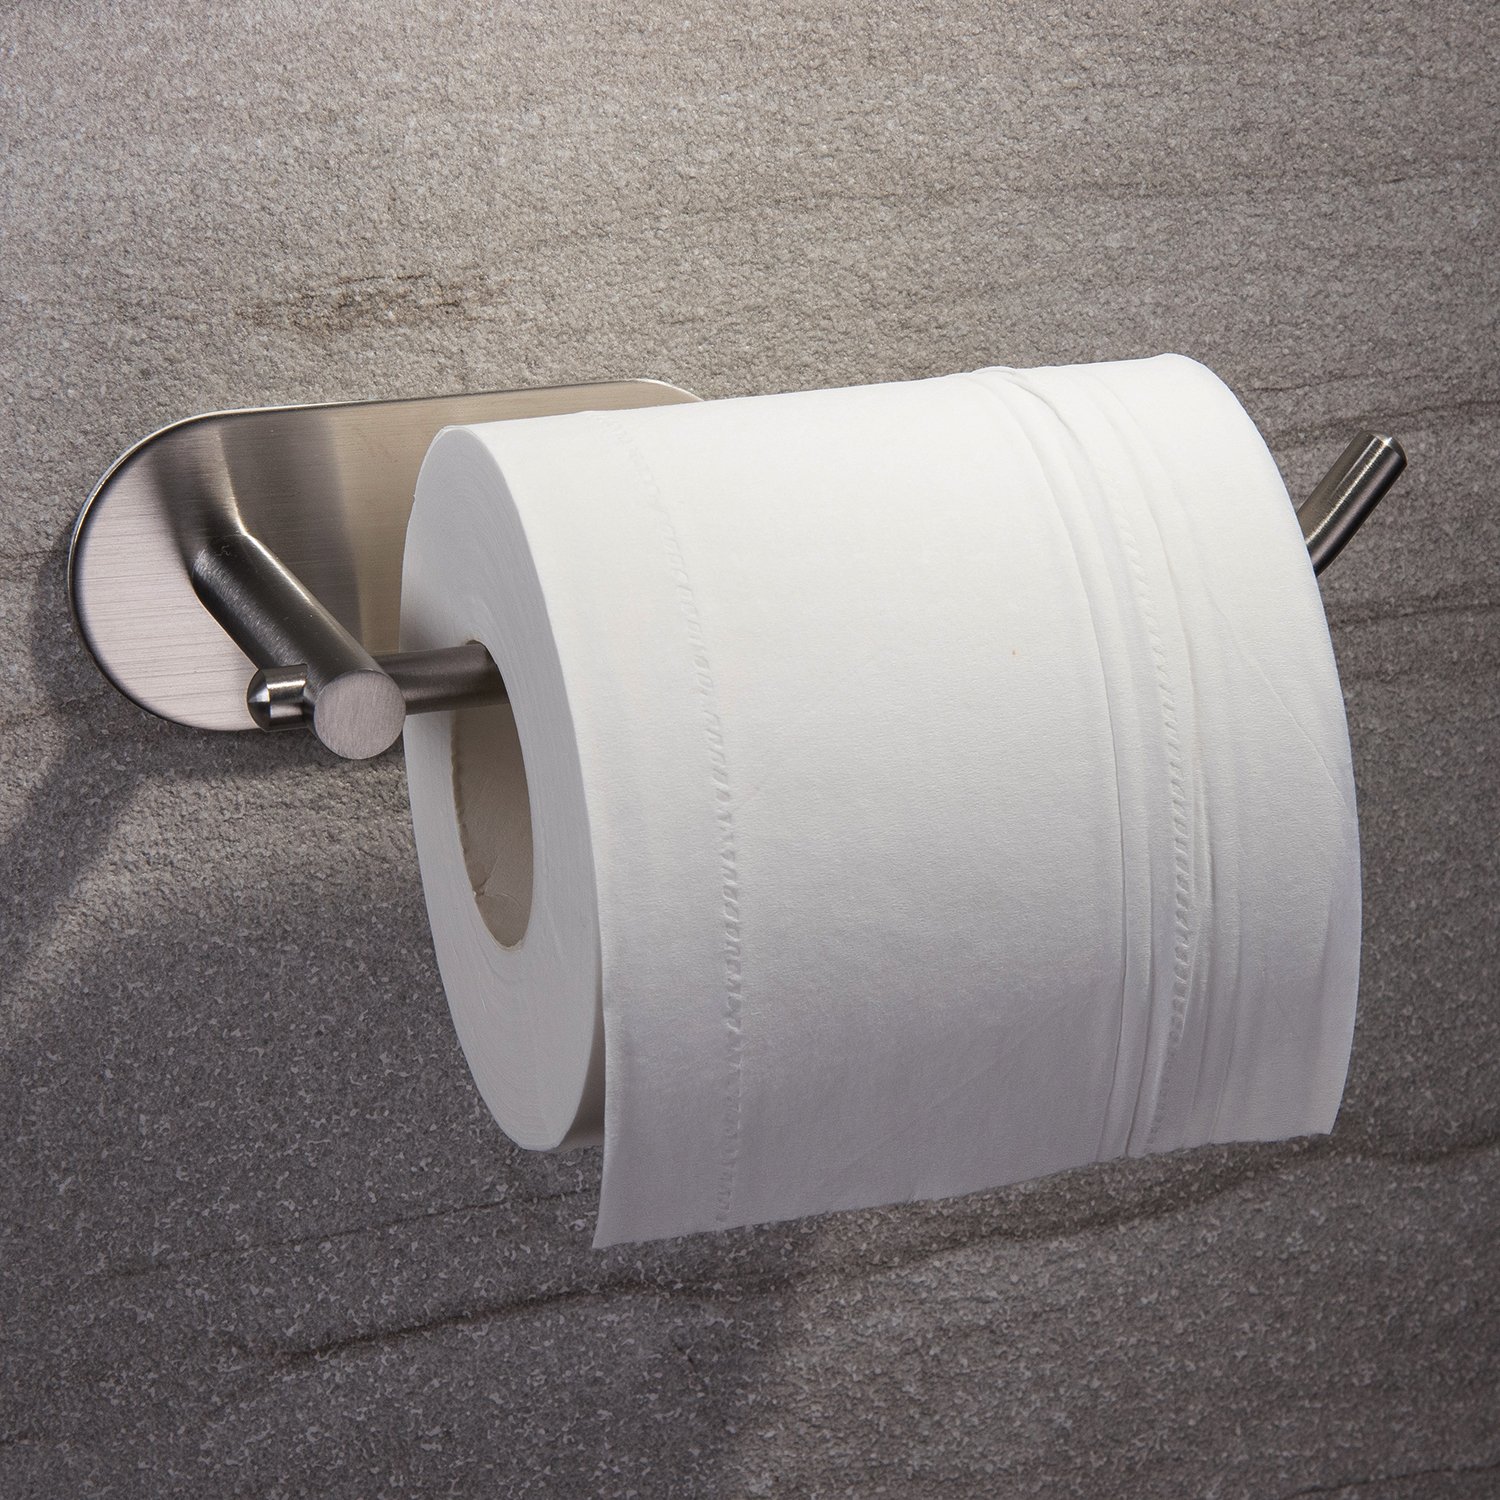 Thường giấy vệ sinh dùng để làm gì